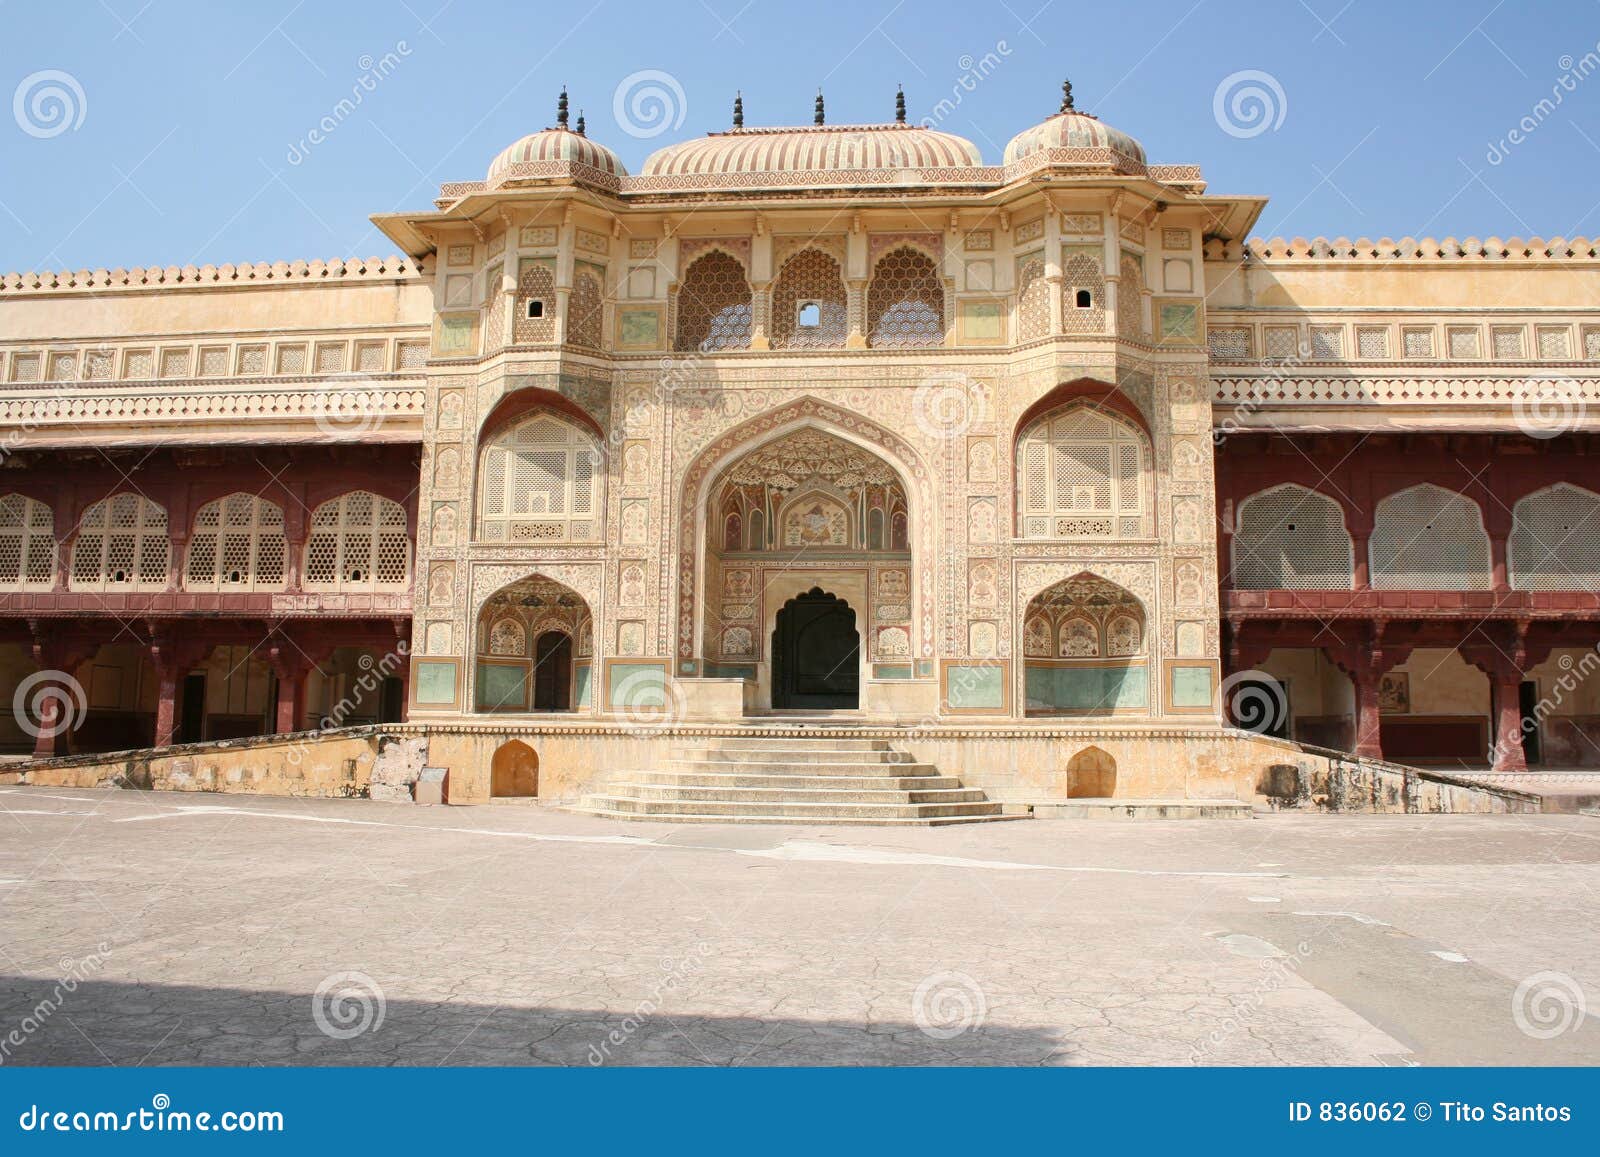 Entrée principale au palais ambre. Jaipur, Inde.